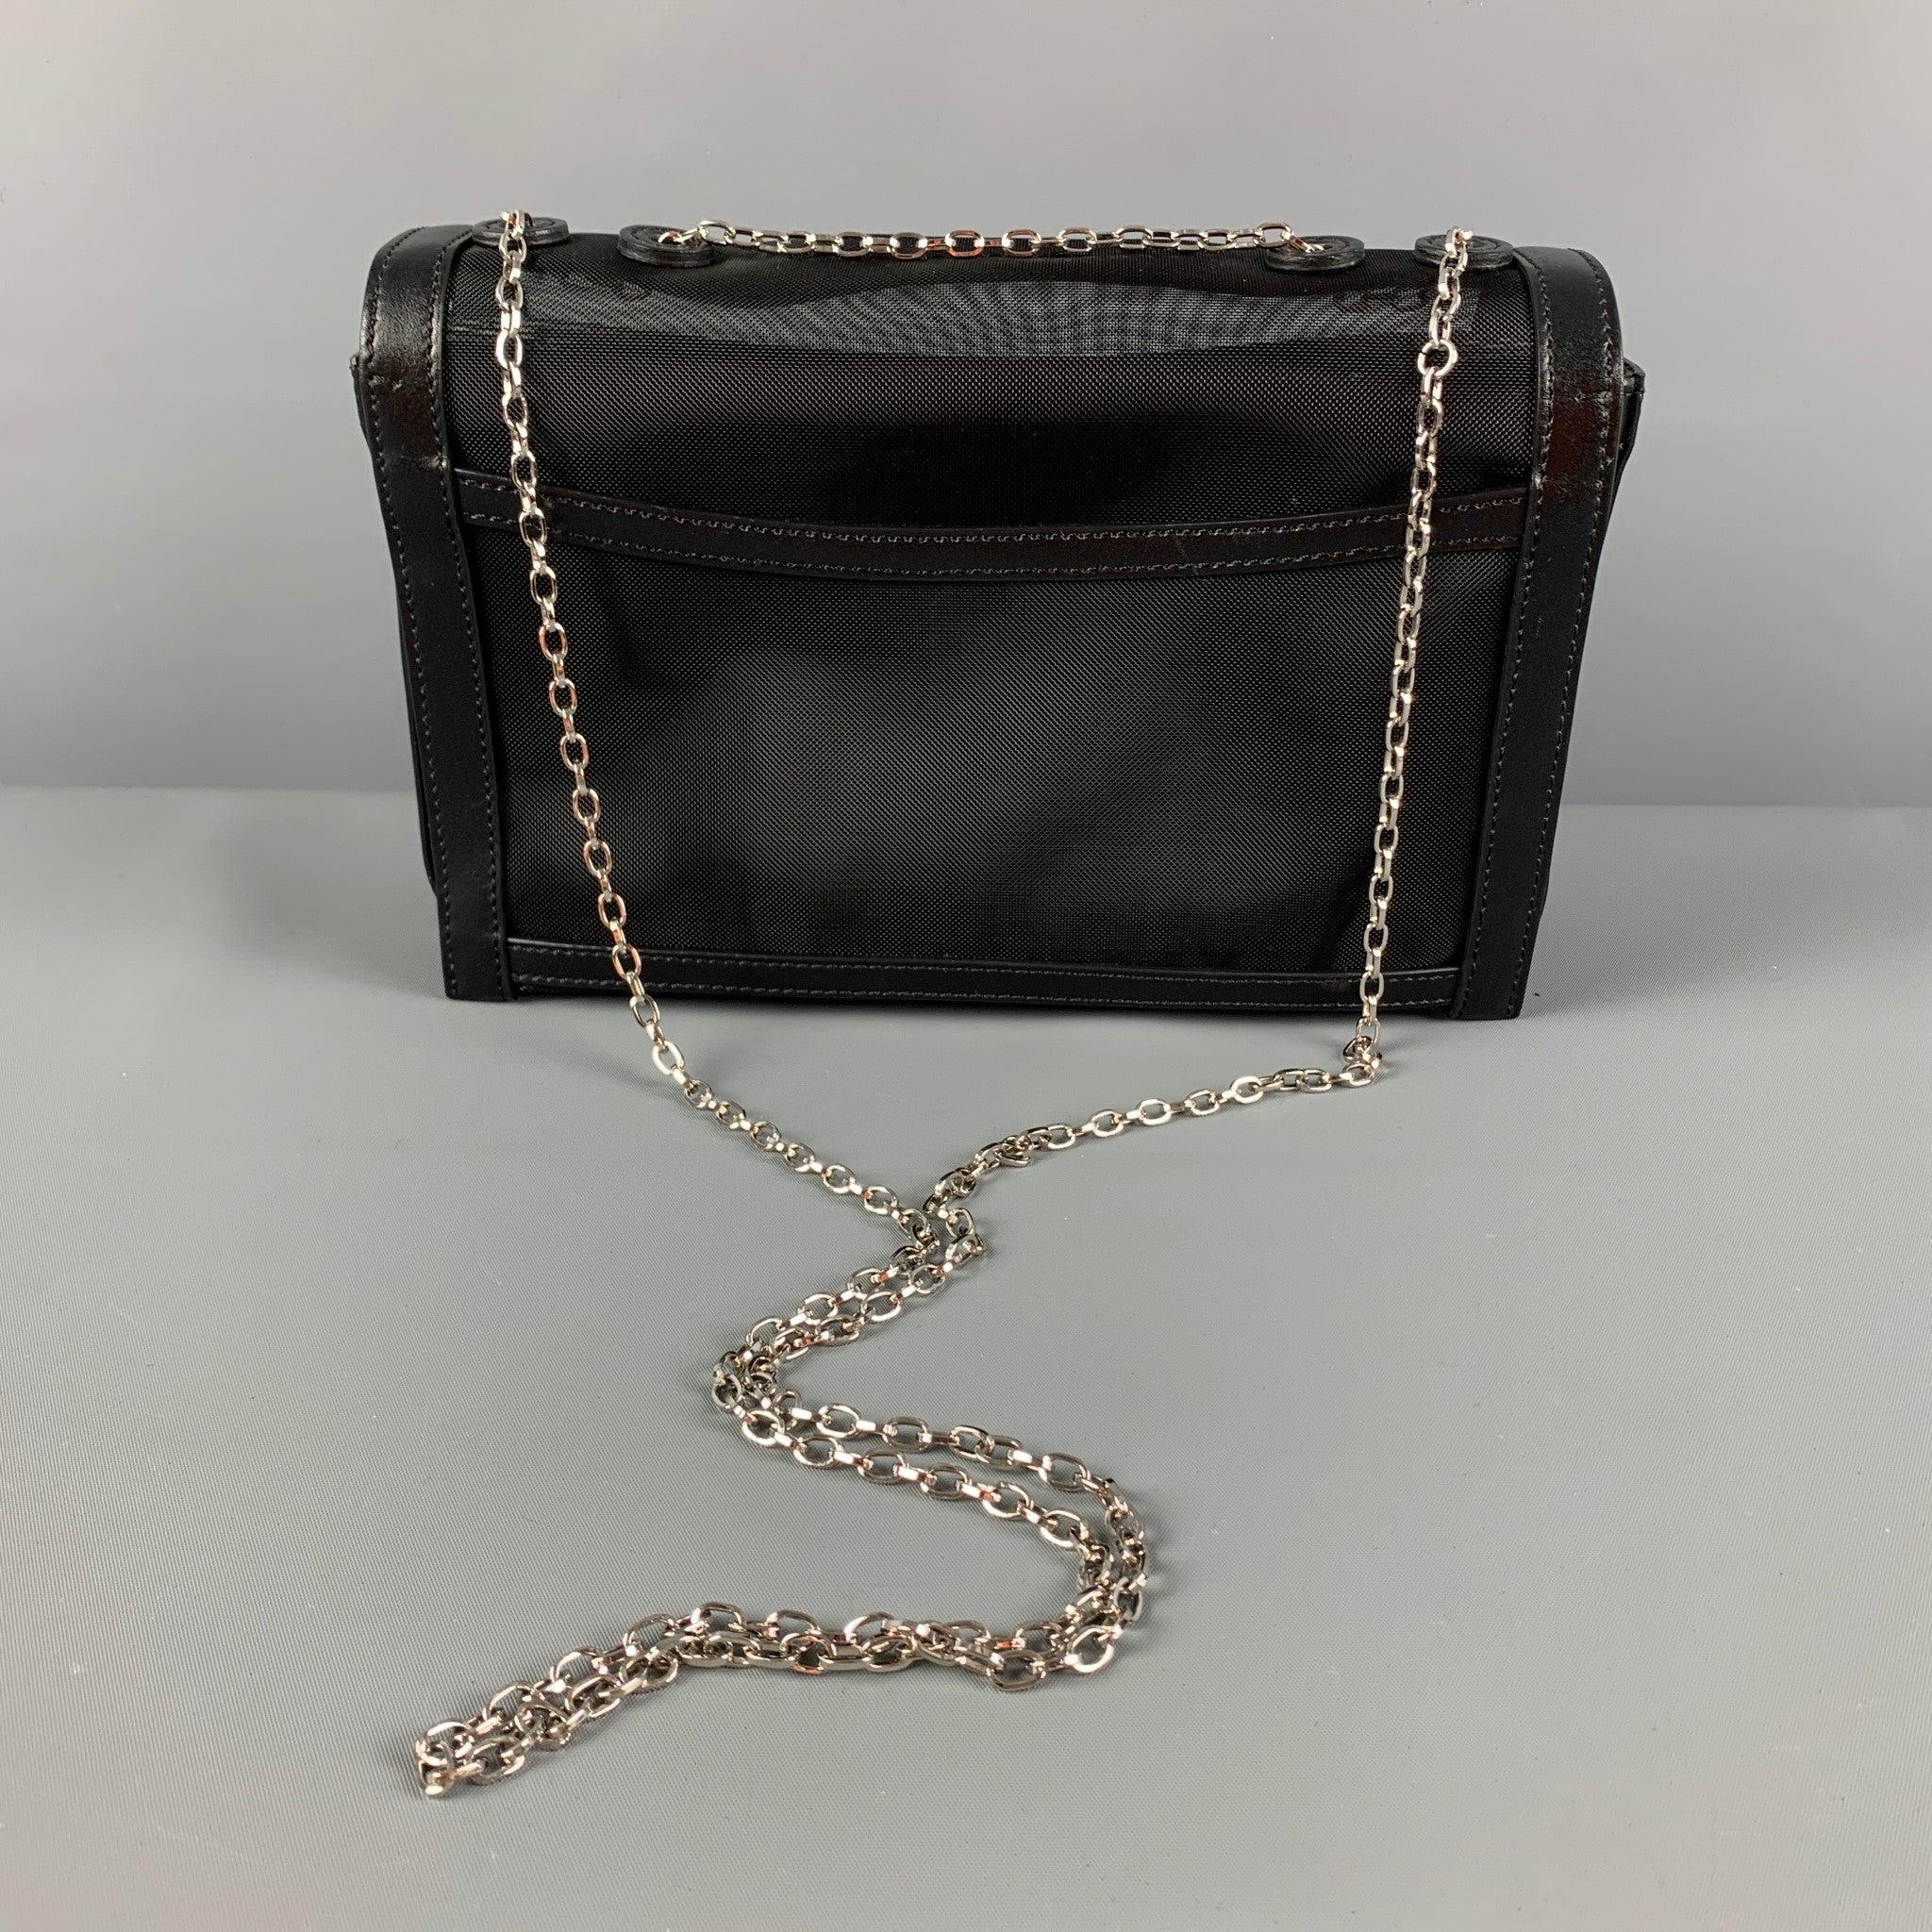 EMPORIO ARMANI Black Silver Mesh Leather Nylon Handbag In Good Condition For Sale In San Francisco, CA